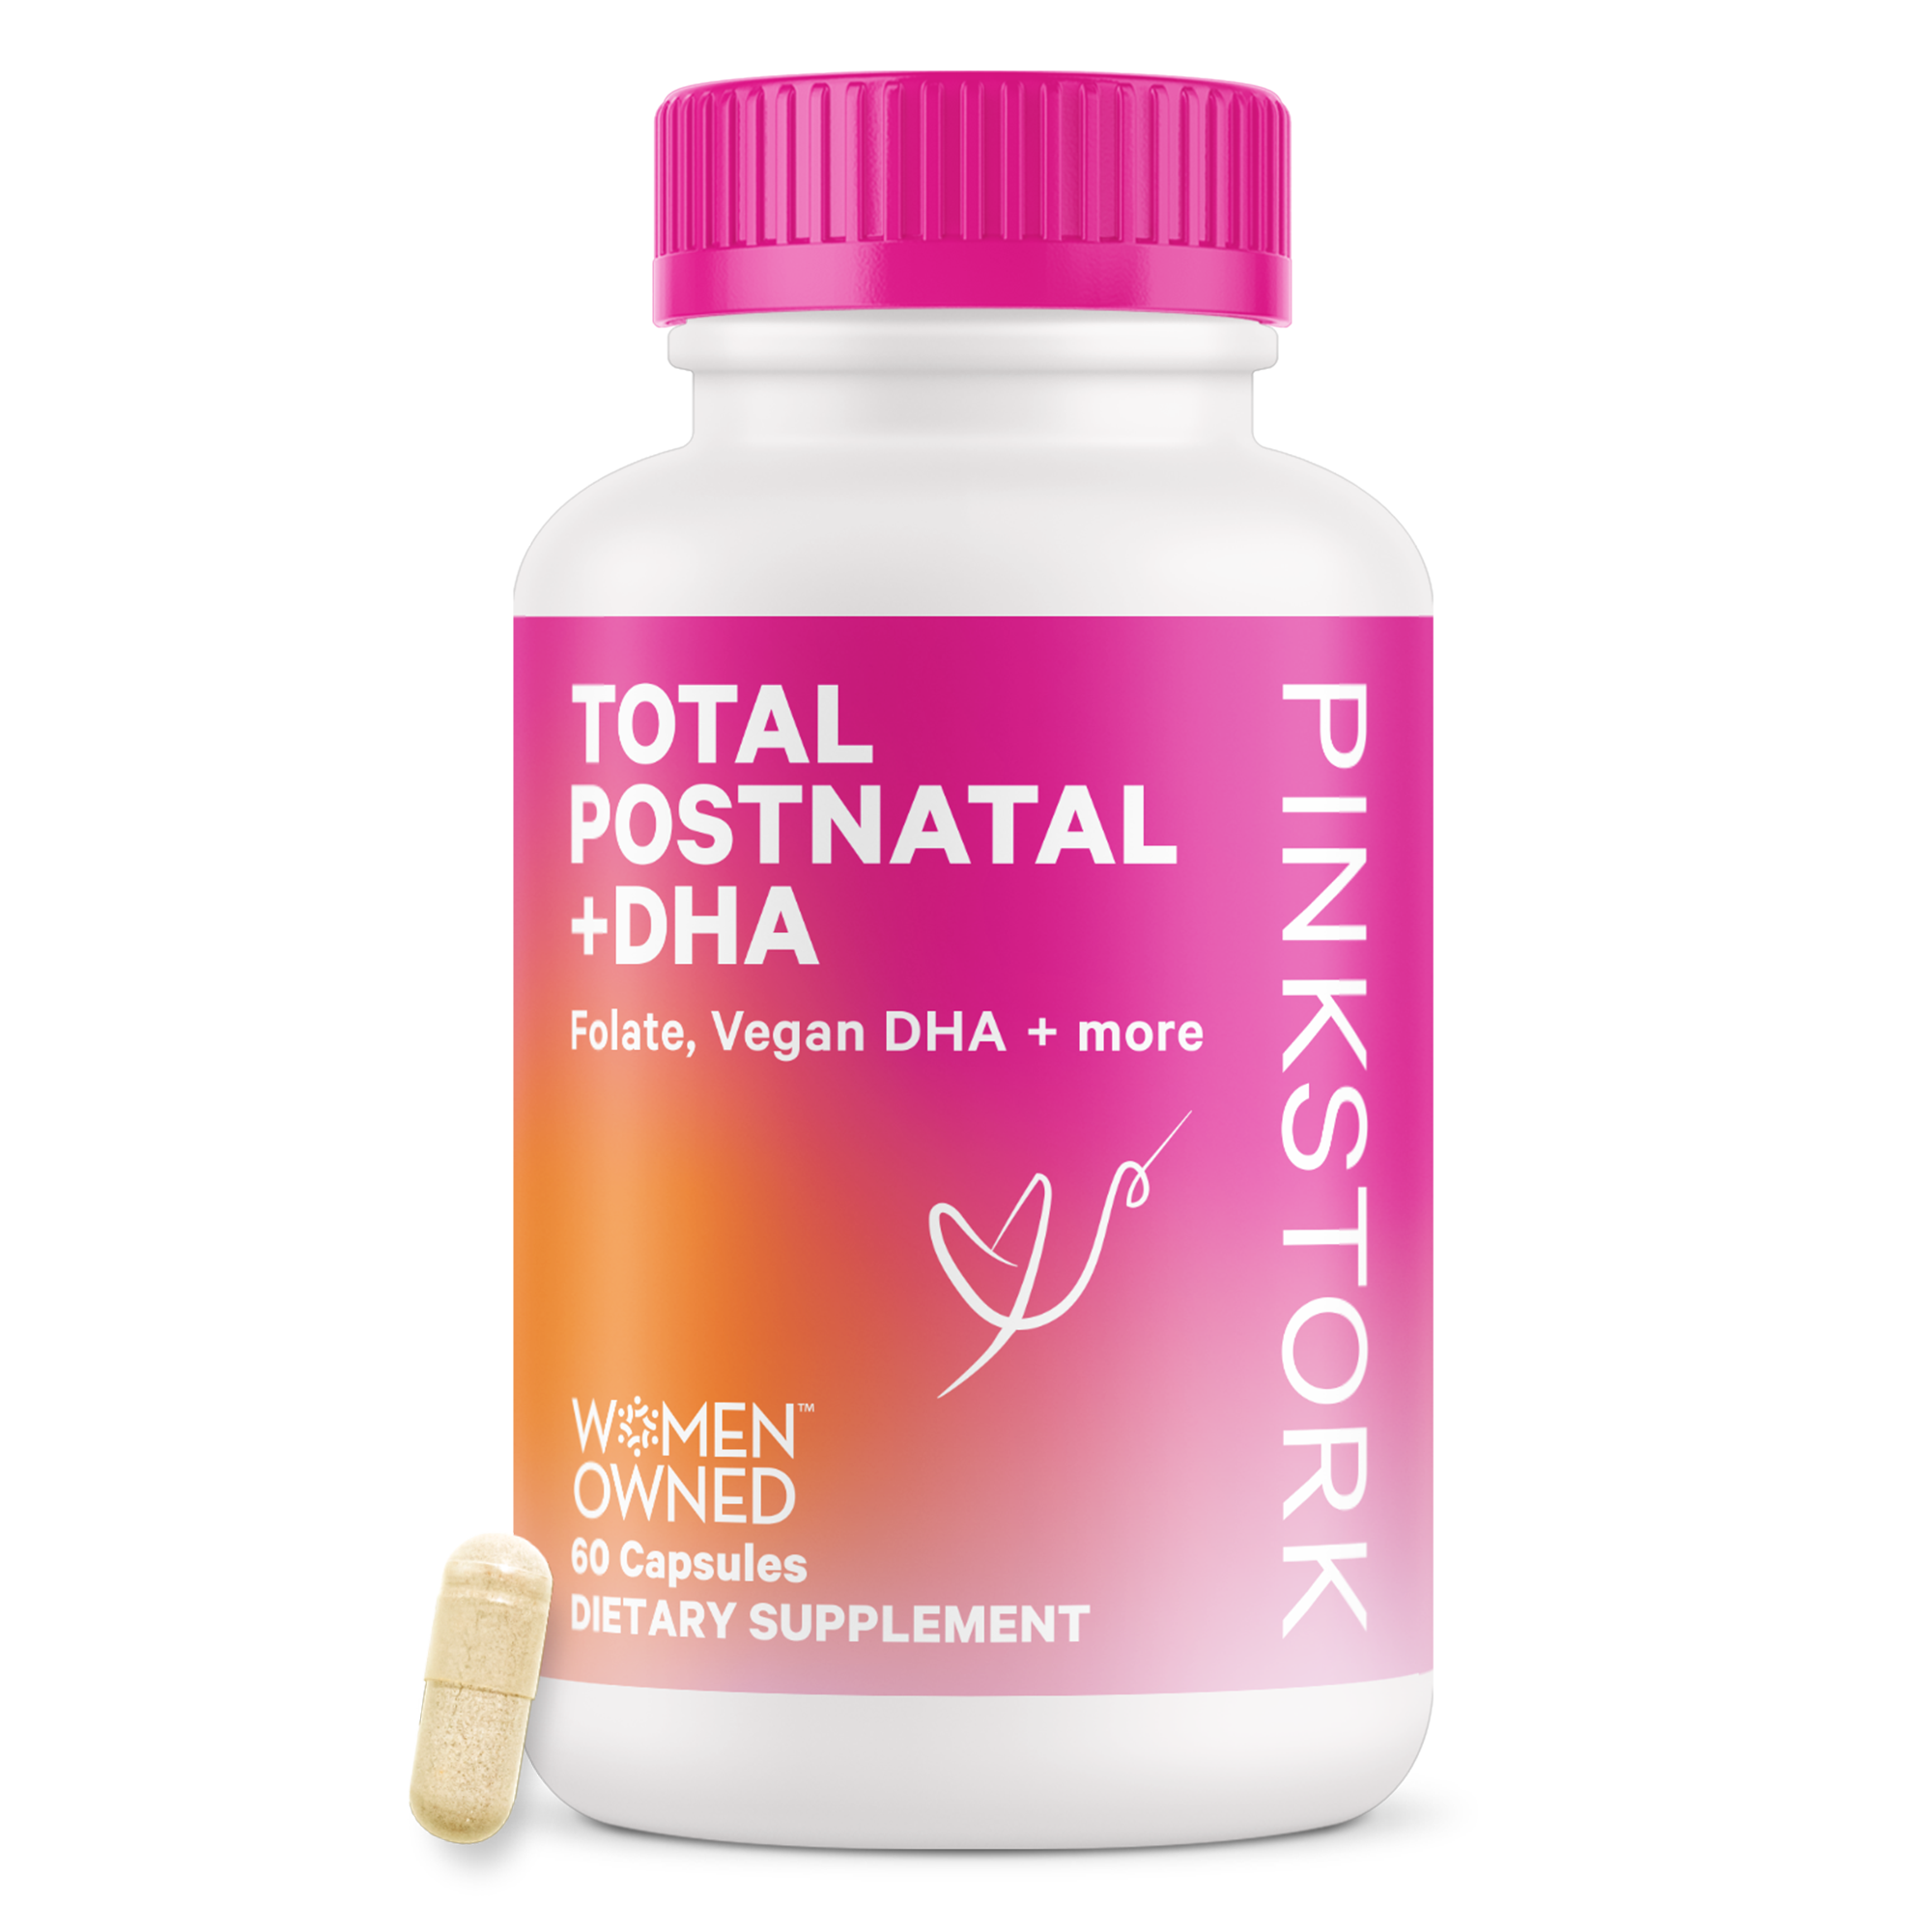 Total Postnatal + DHA